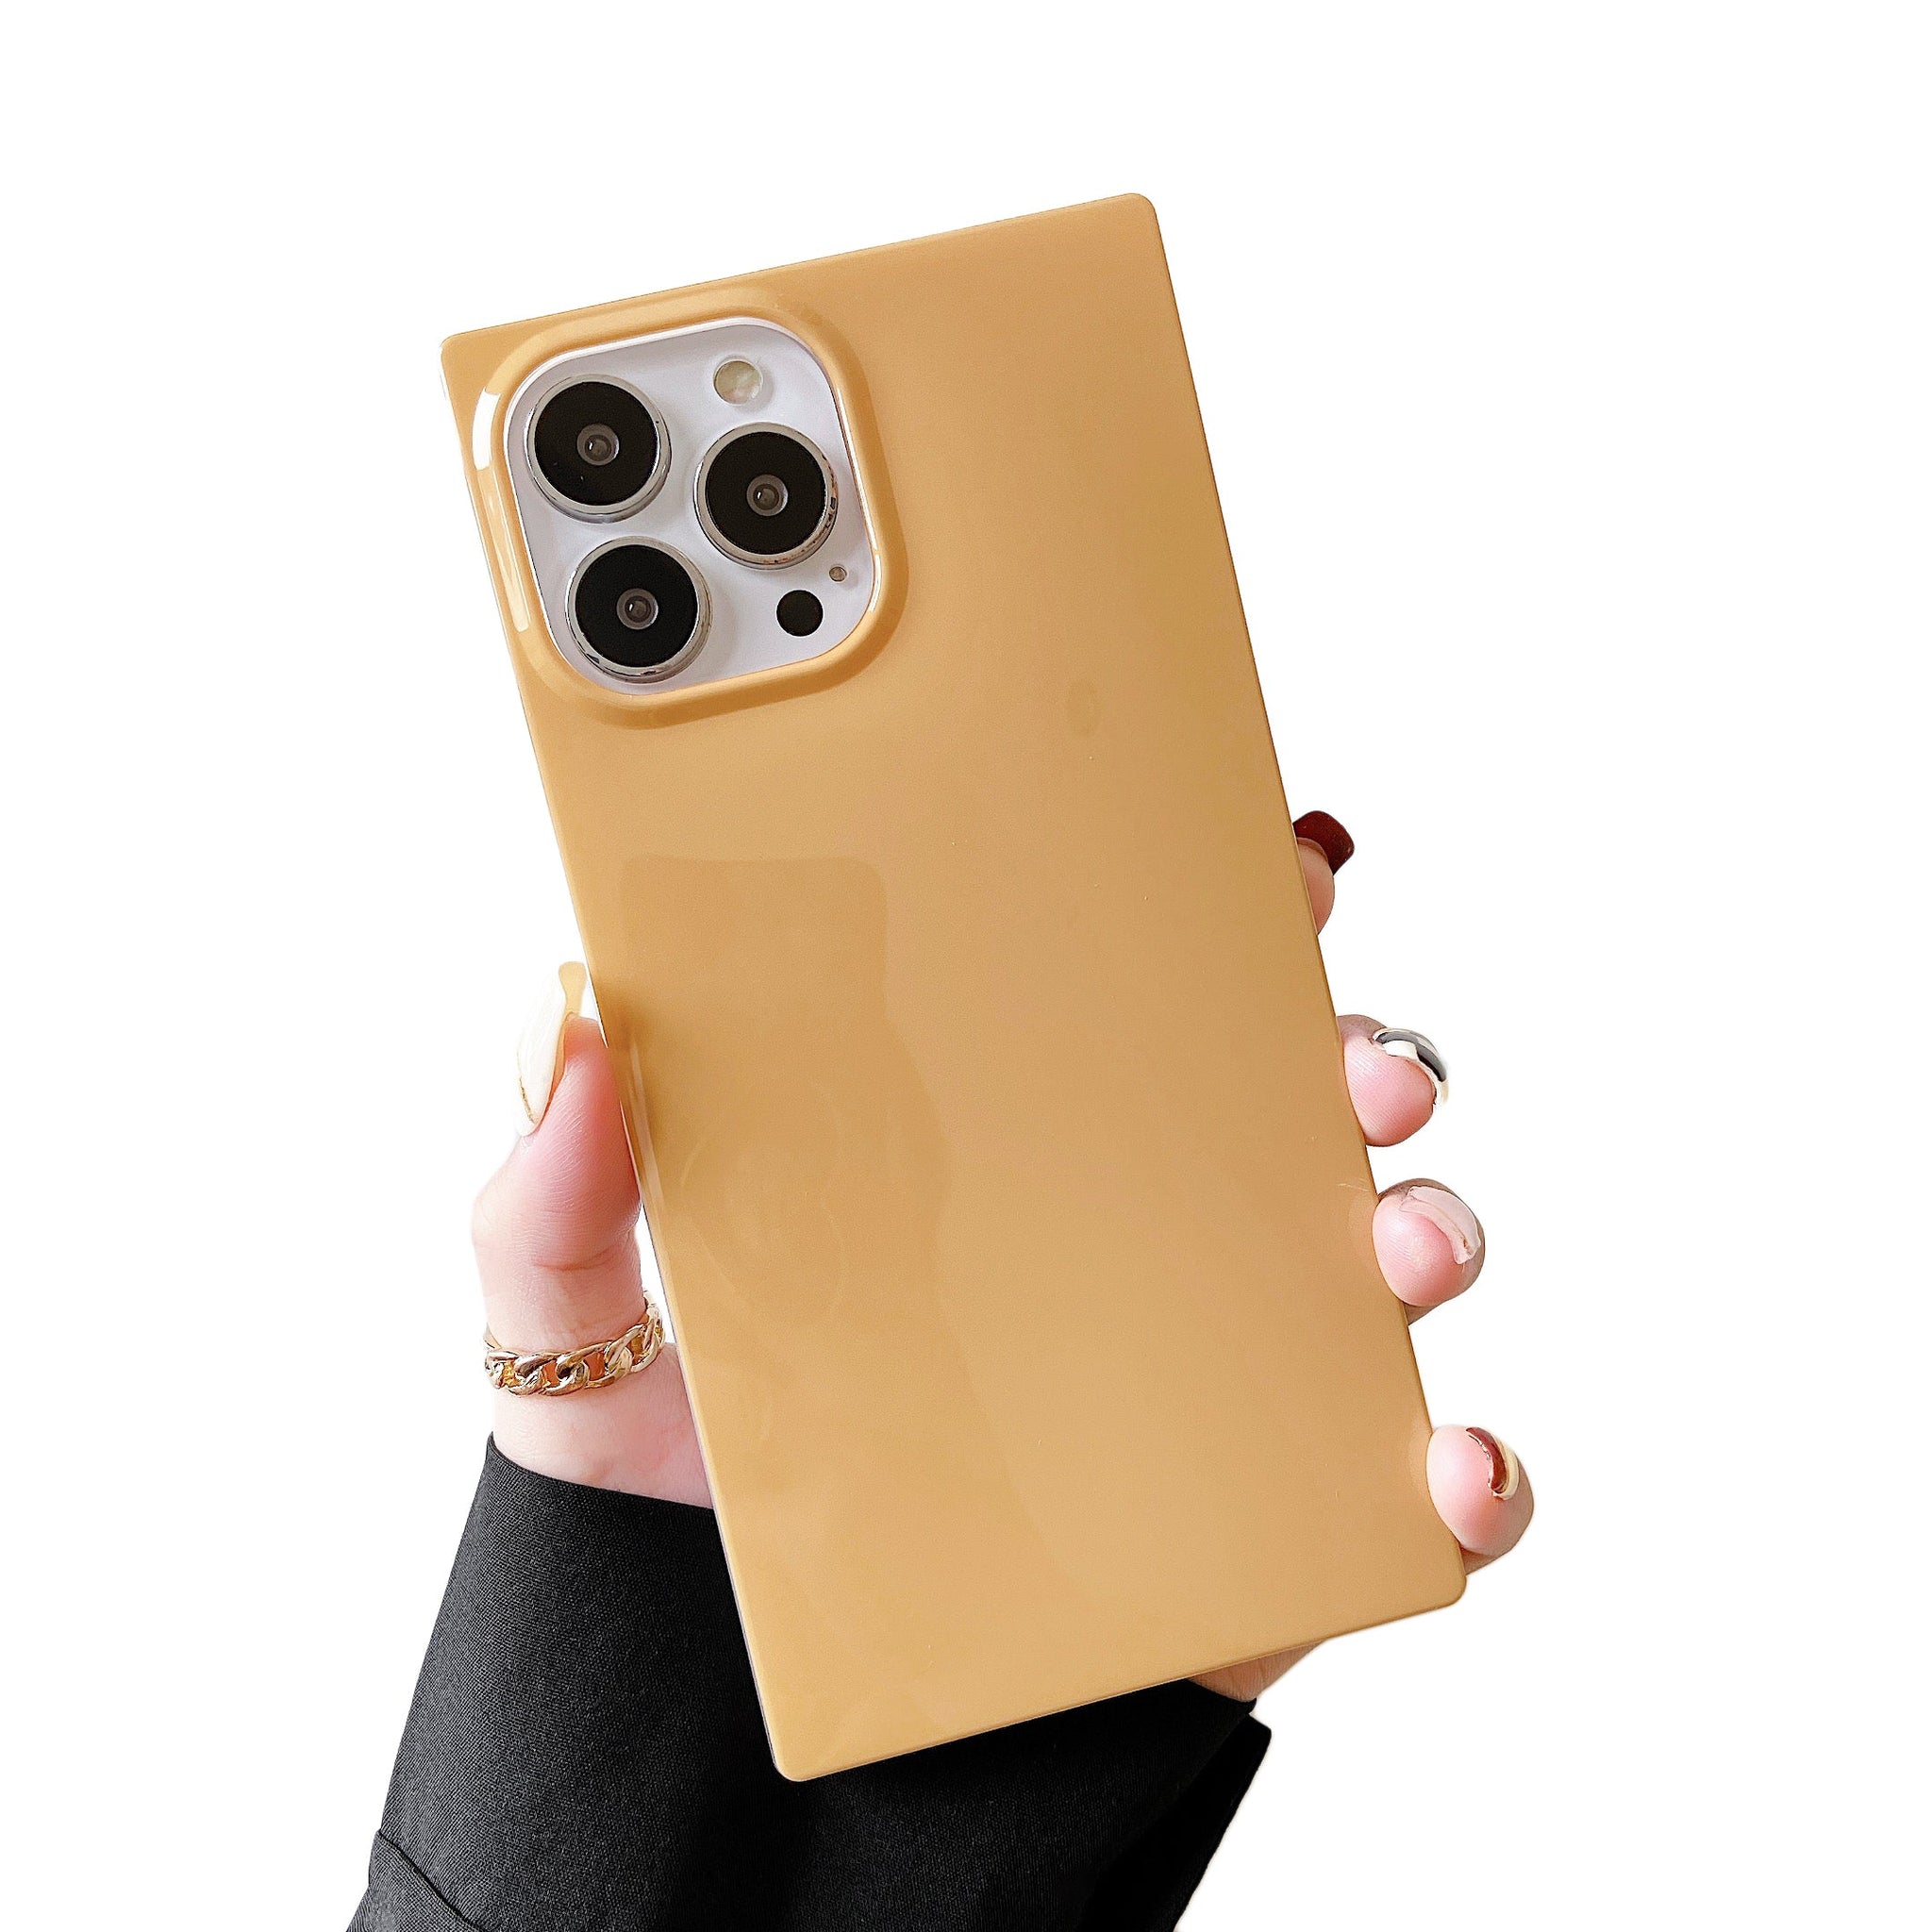 iPhone 11 Pro Max Case Square Neutral Plain Color (Honey)